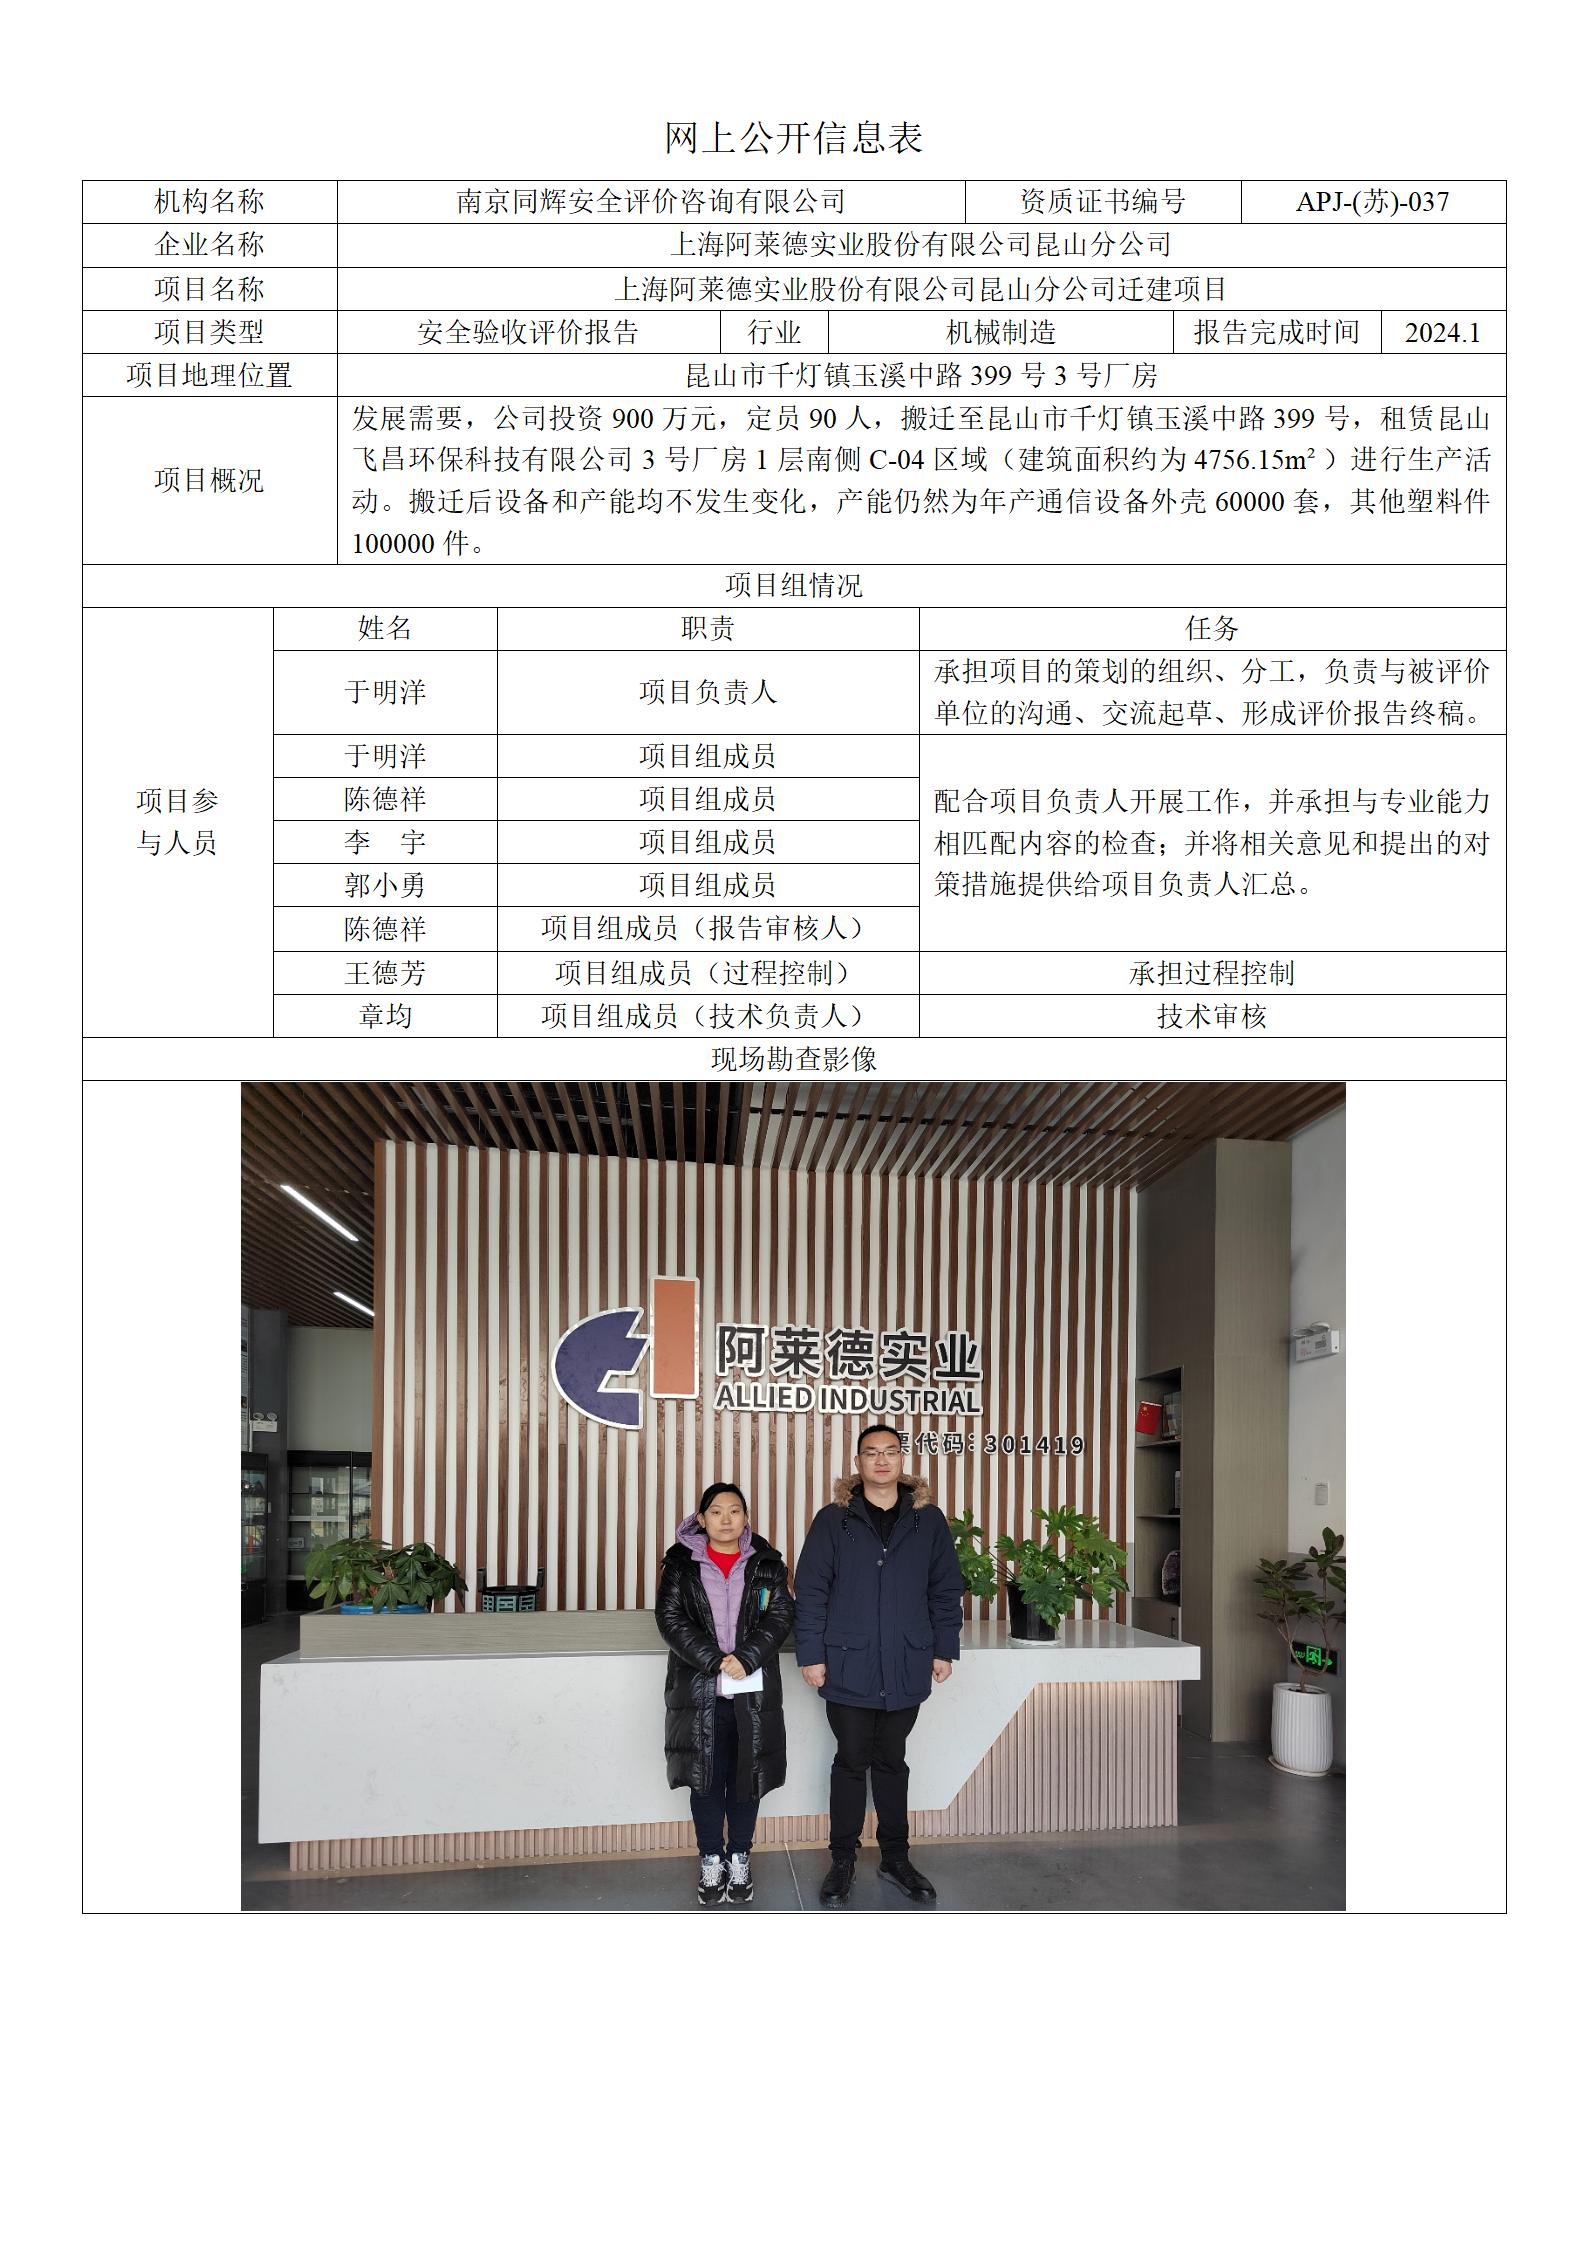 10  2401上海阿莱德实业昆山有限公司迁建项目验收评价报告网上公开信息表_01.jpg